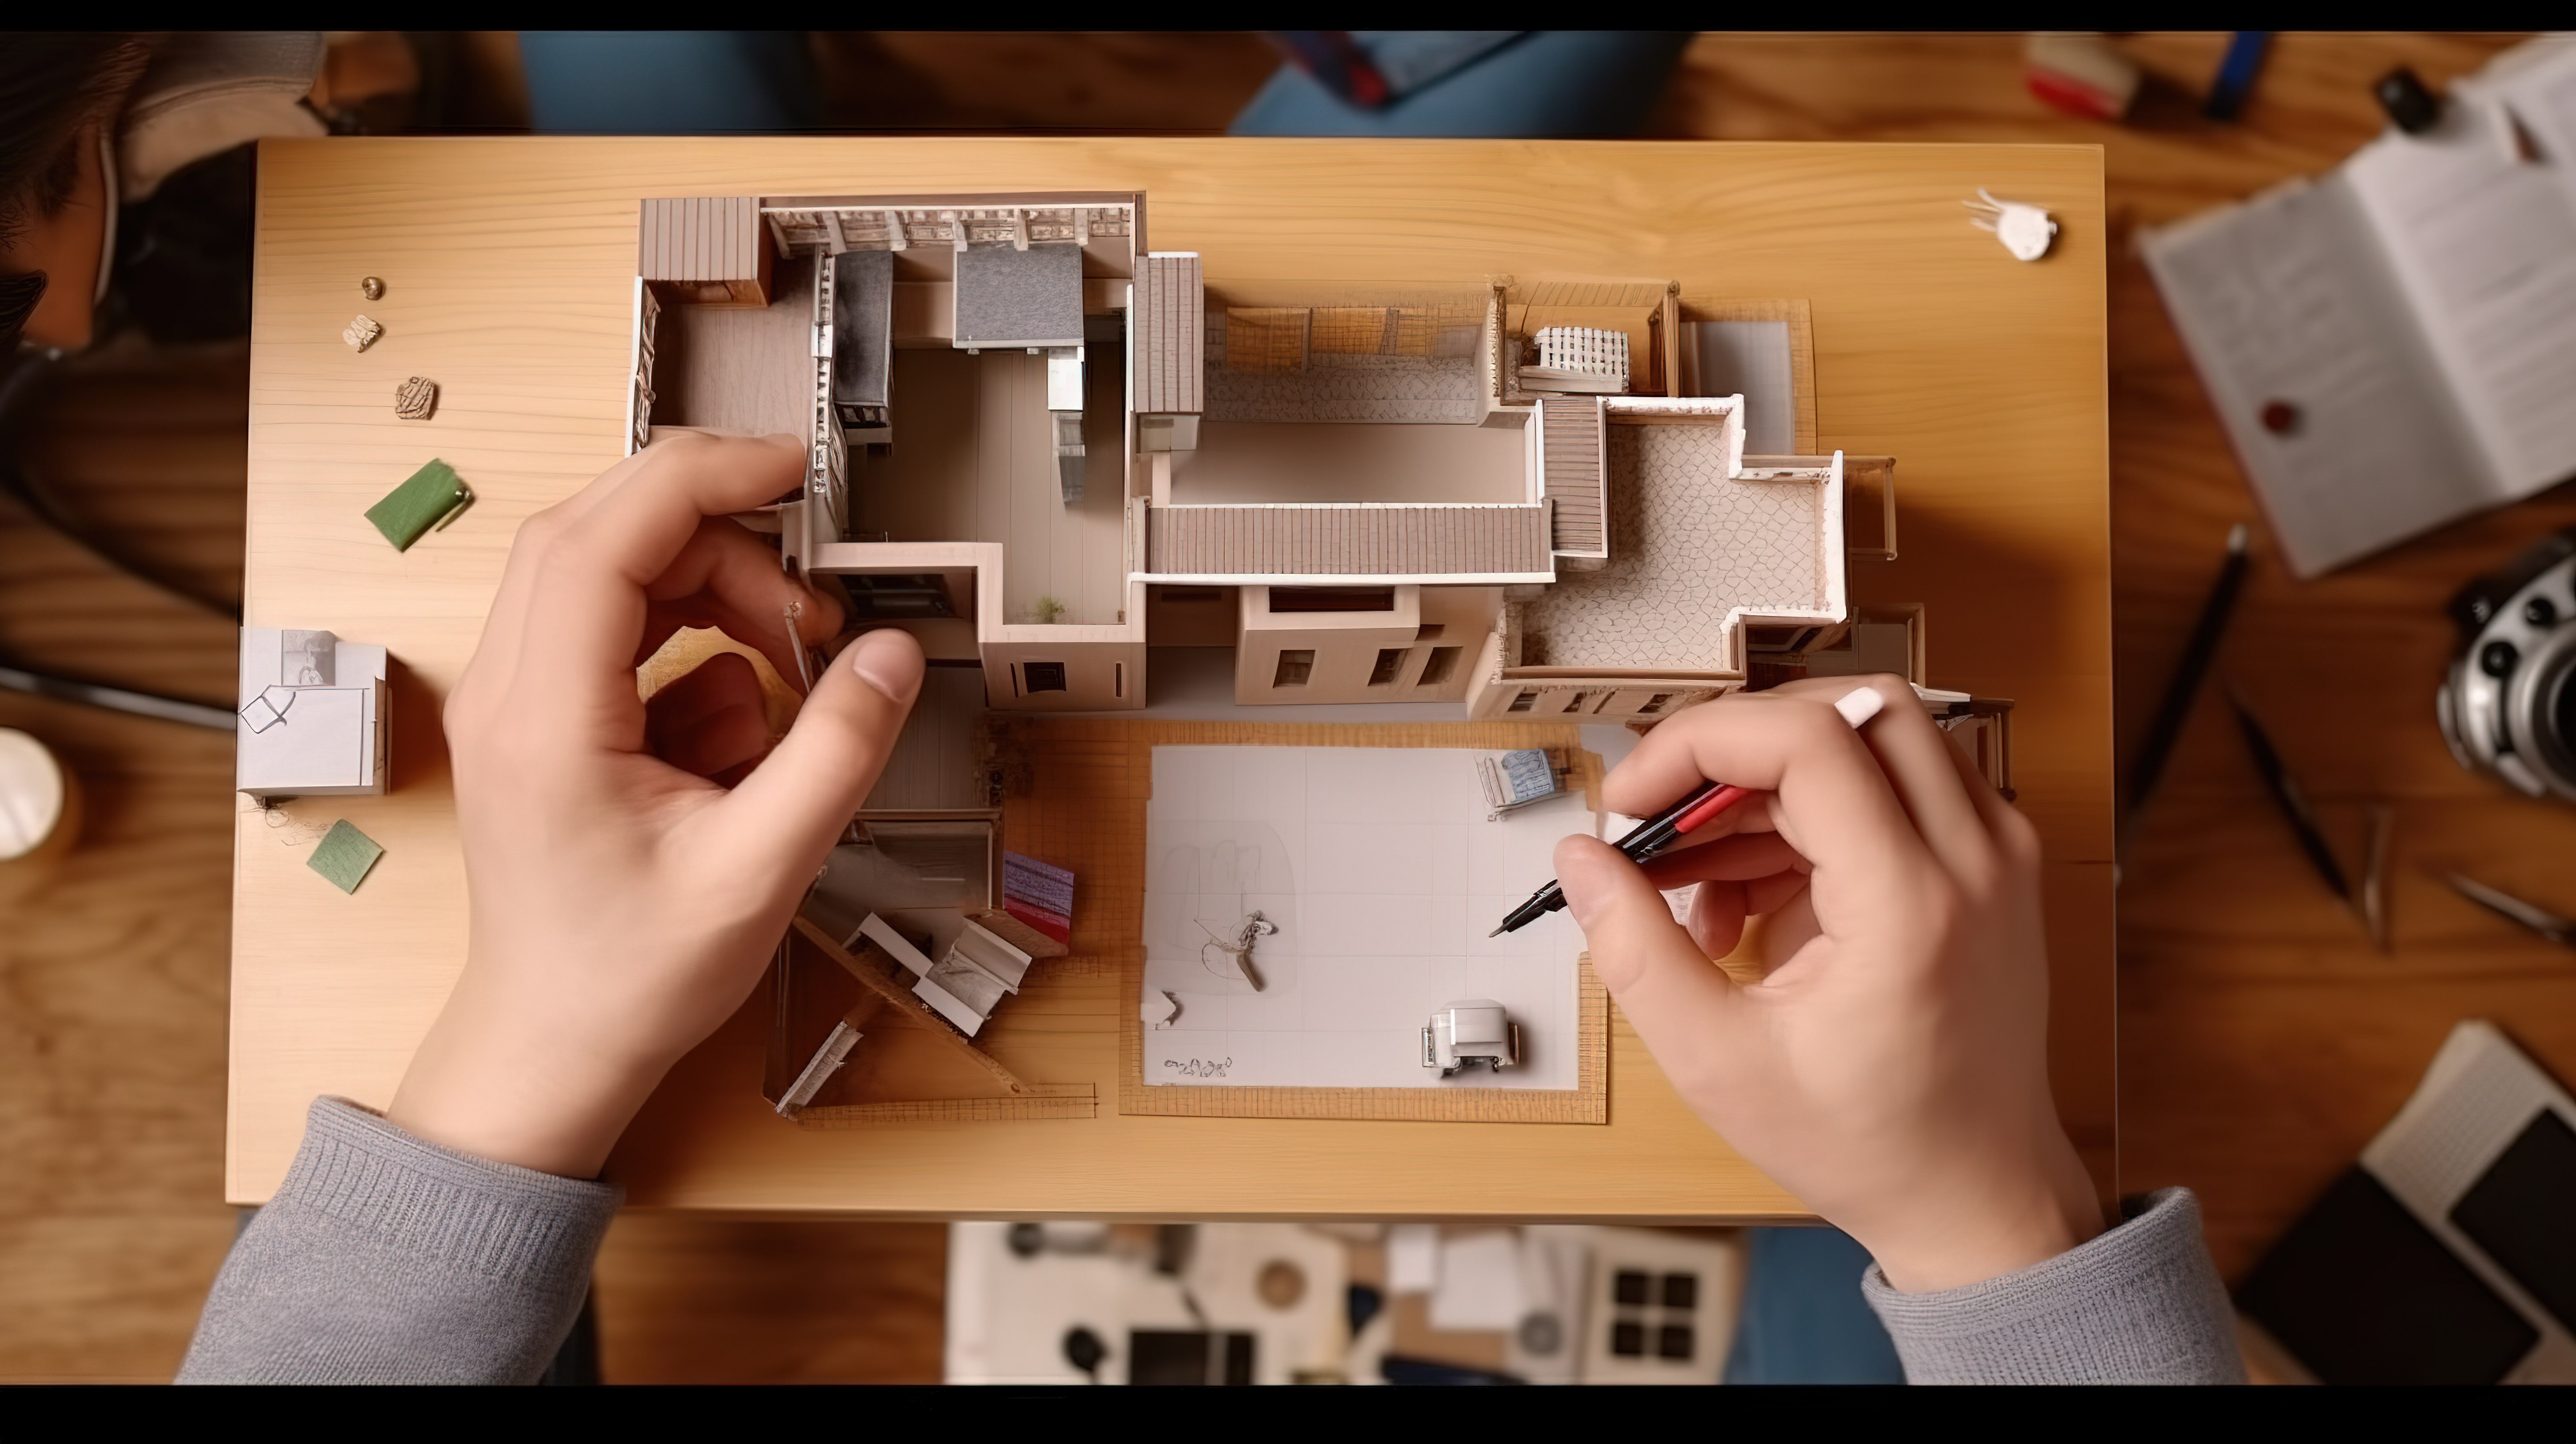 助理捕捉房屋 3D 模型而建筑师记录房间尺寸的鸟瞰图图片